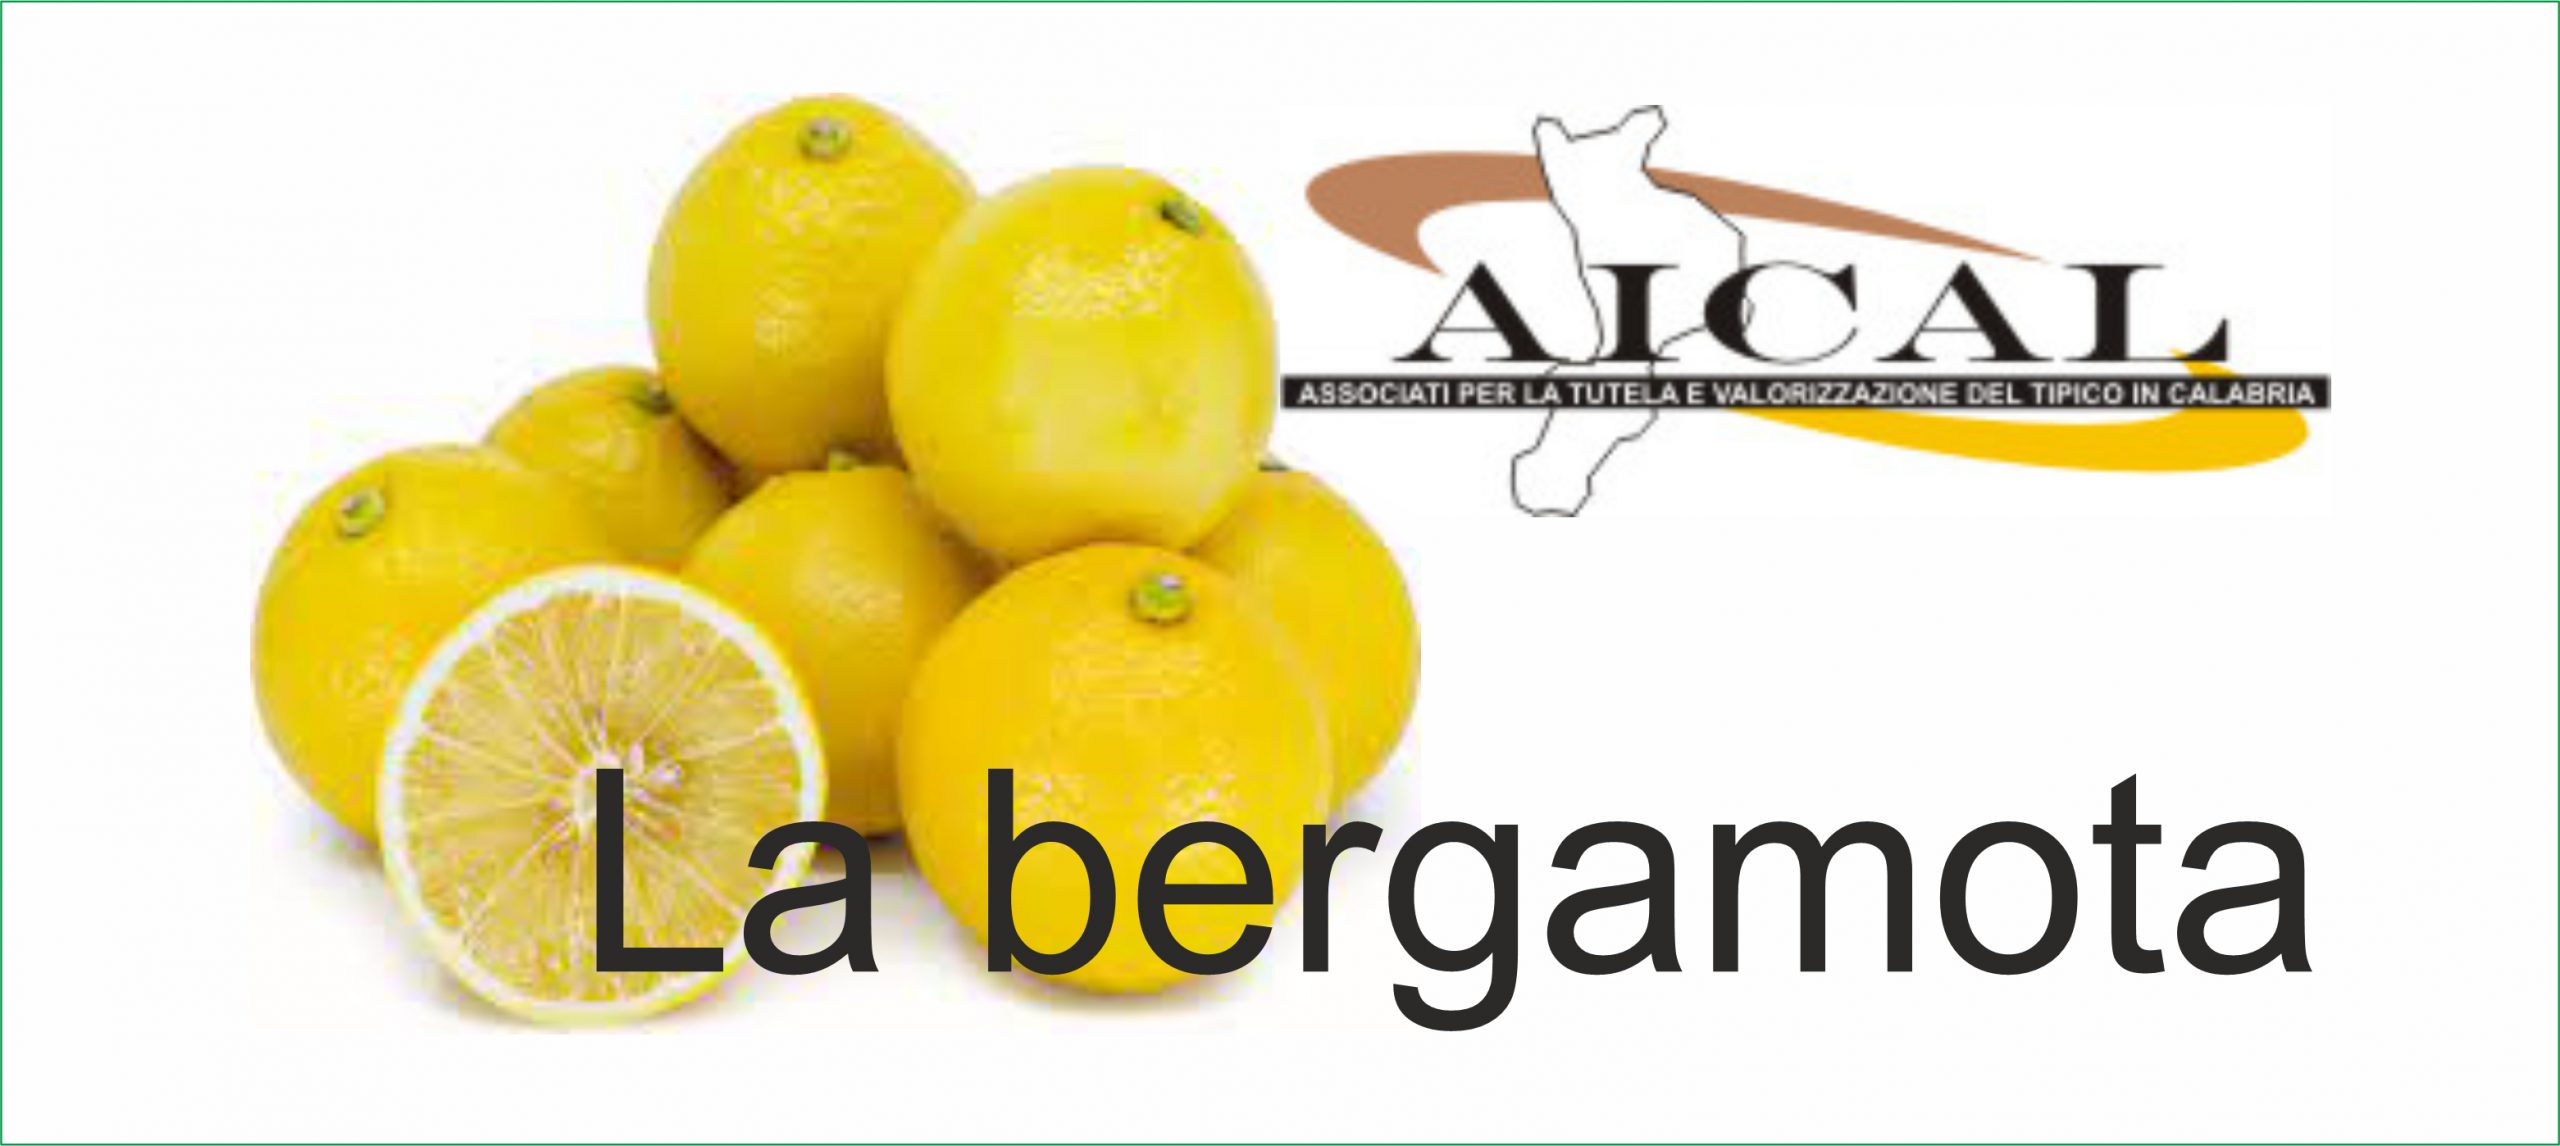 Bergamota: La mejor fruta para el colesterol y defensa inmunitaria